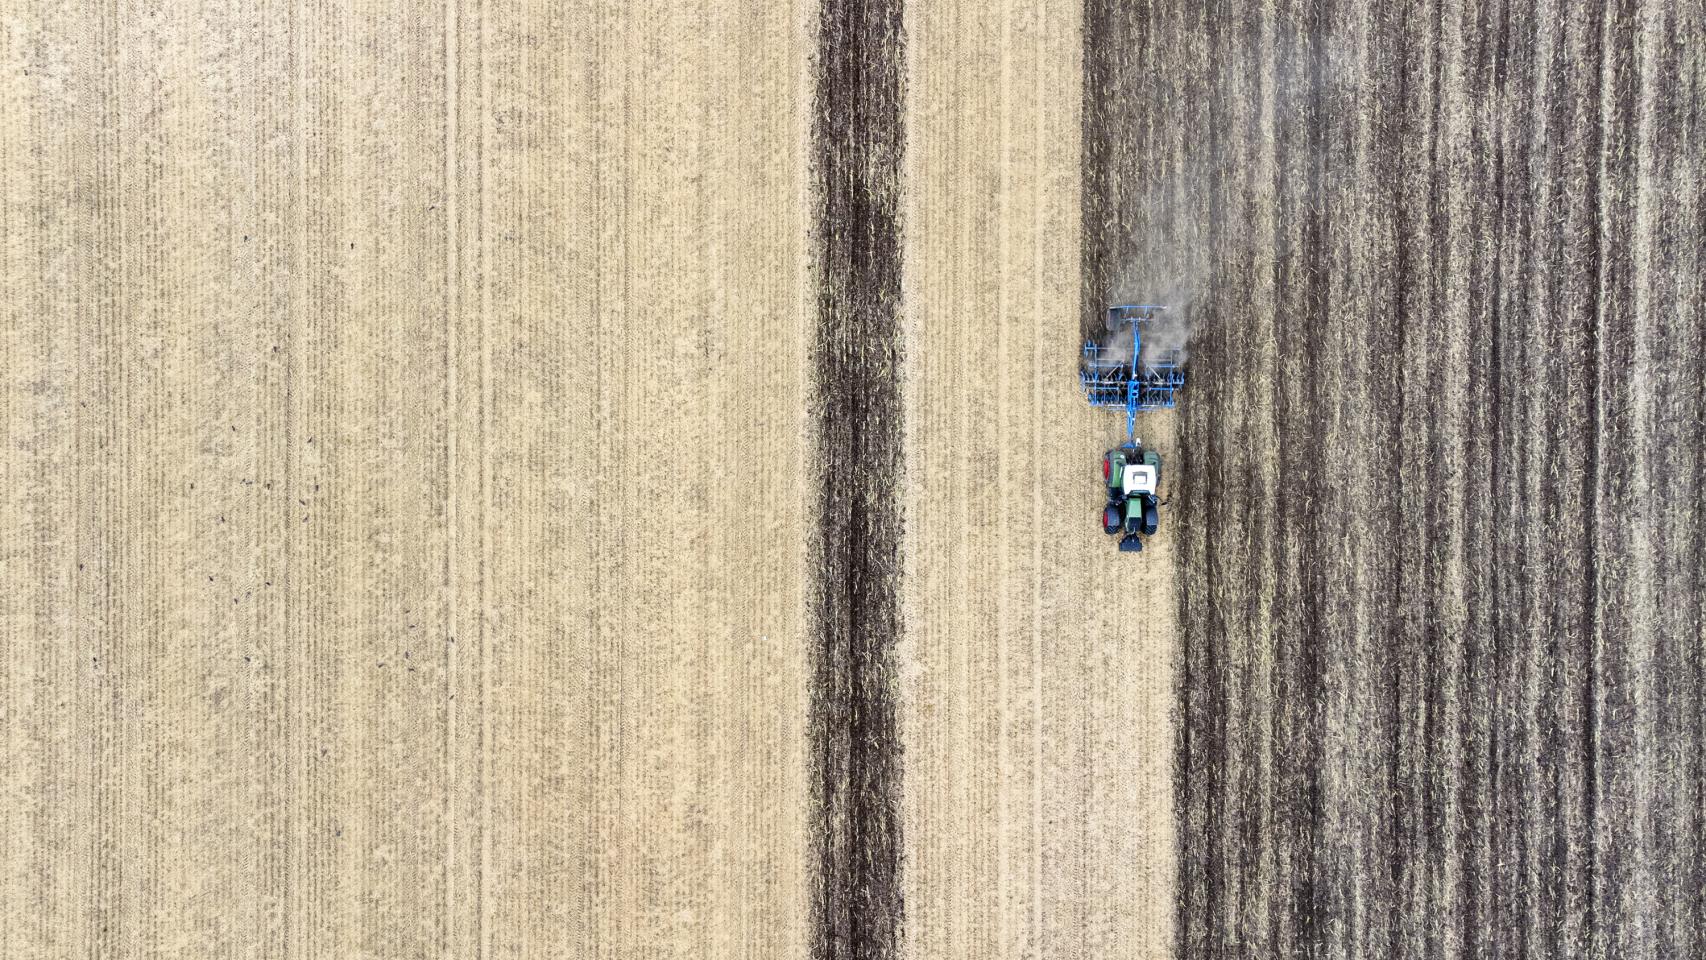 Vista aérea de un tractor cosechando campos de cereal